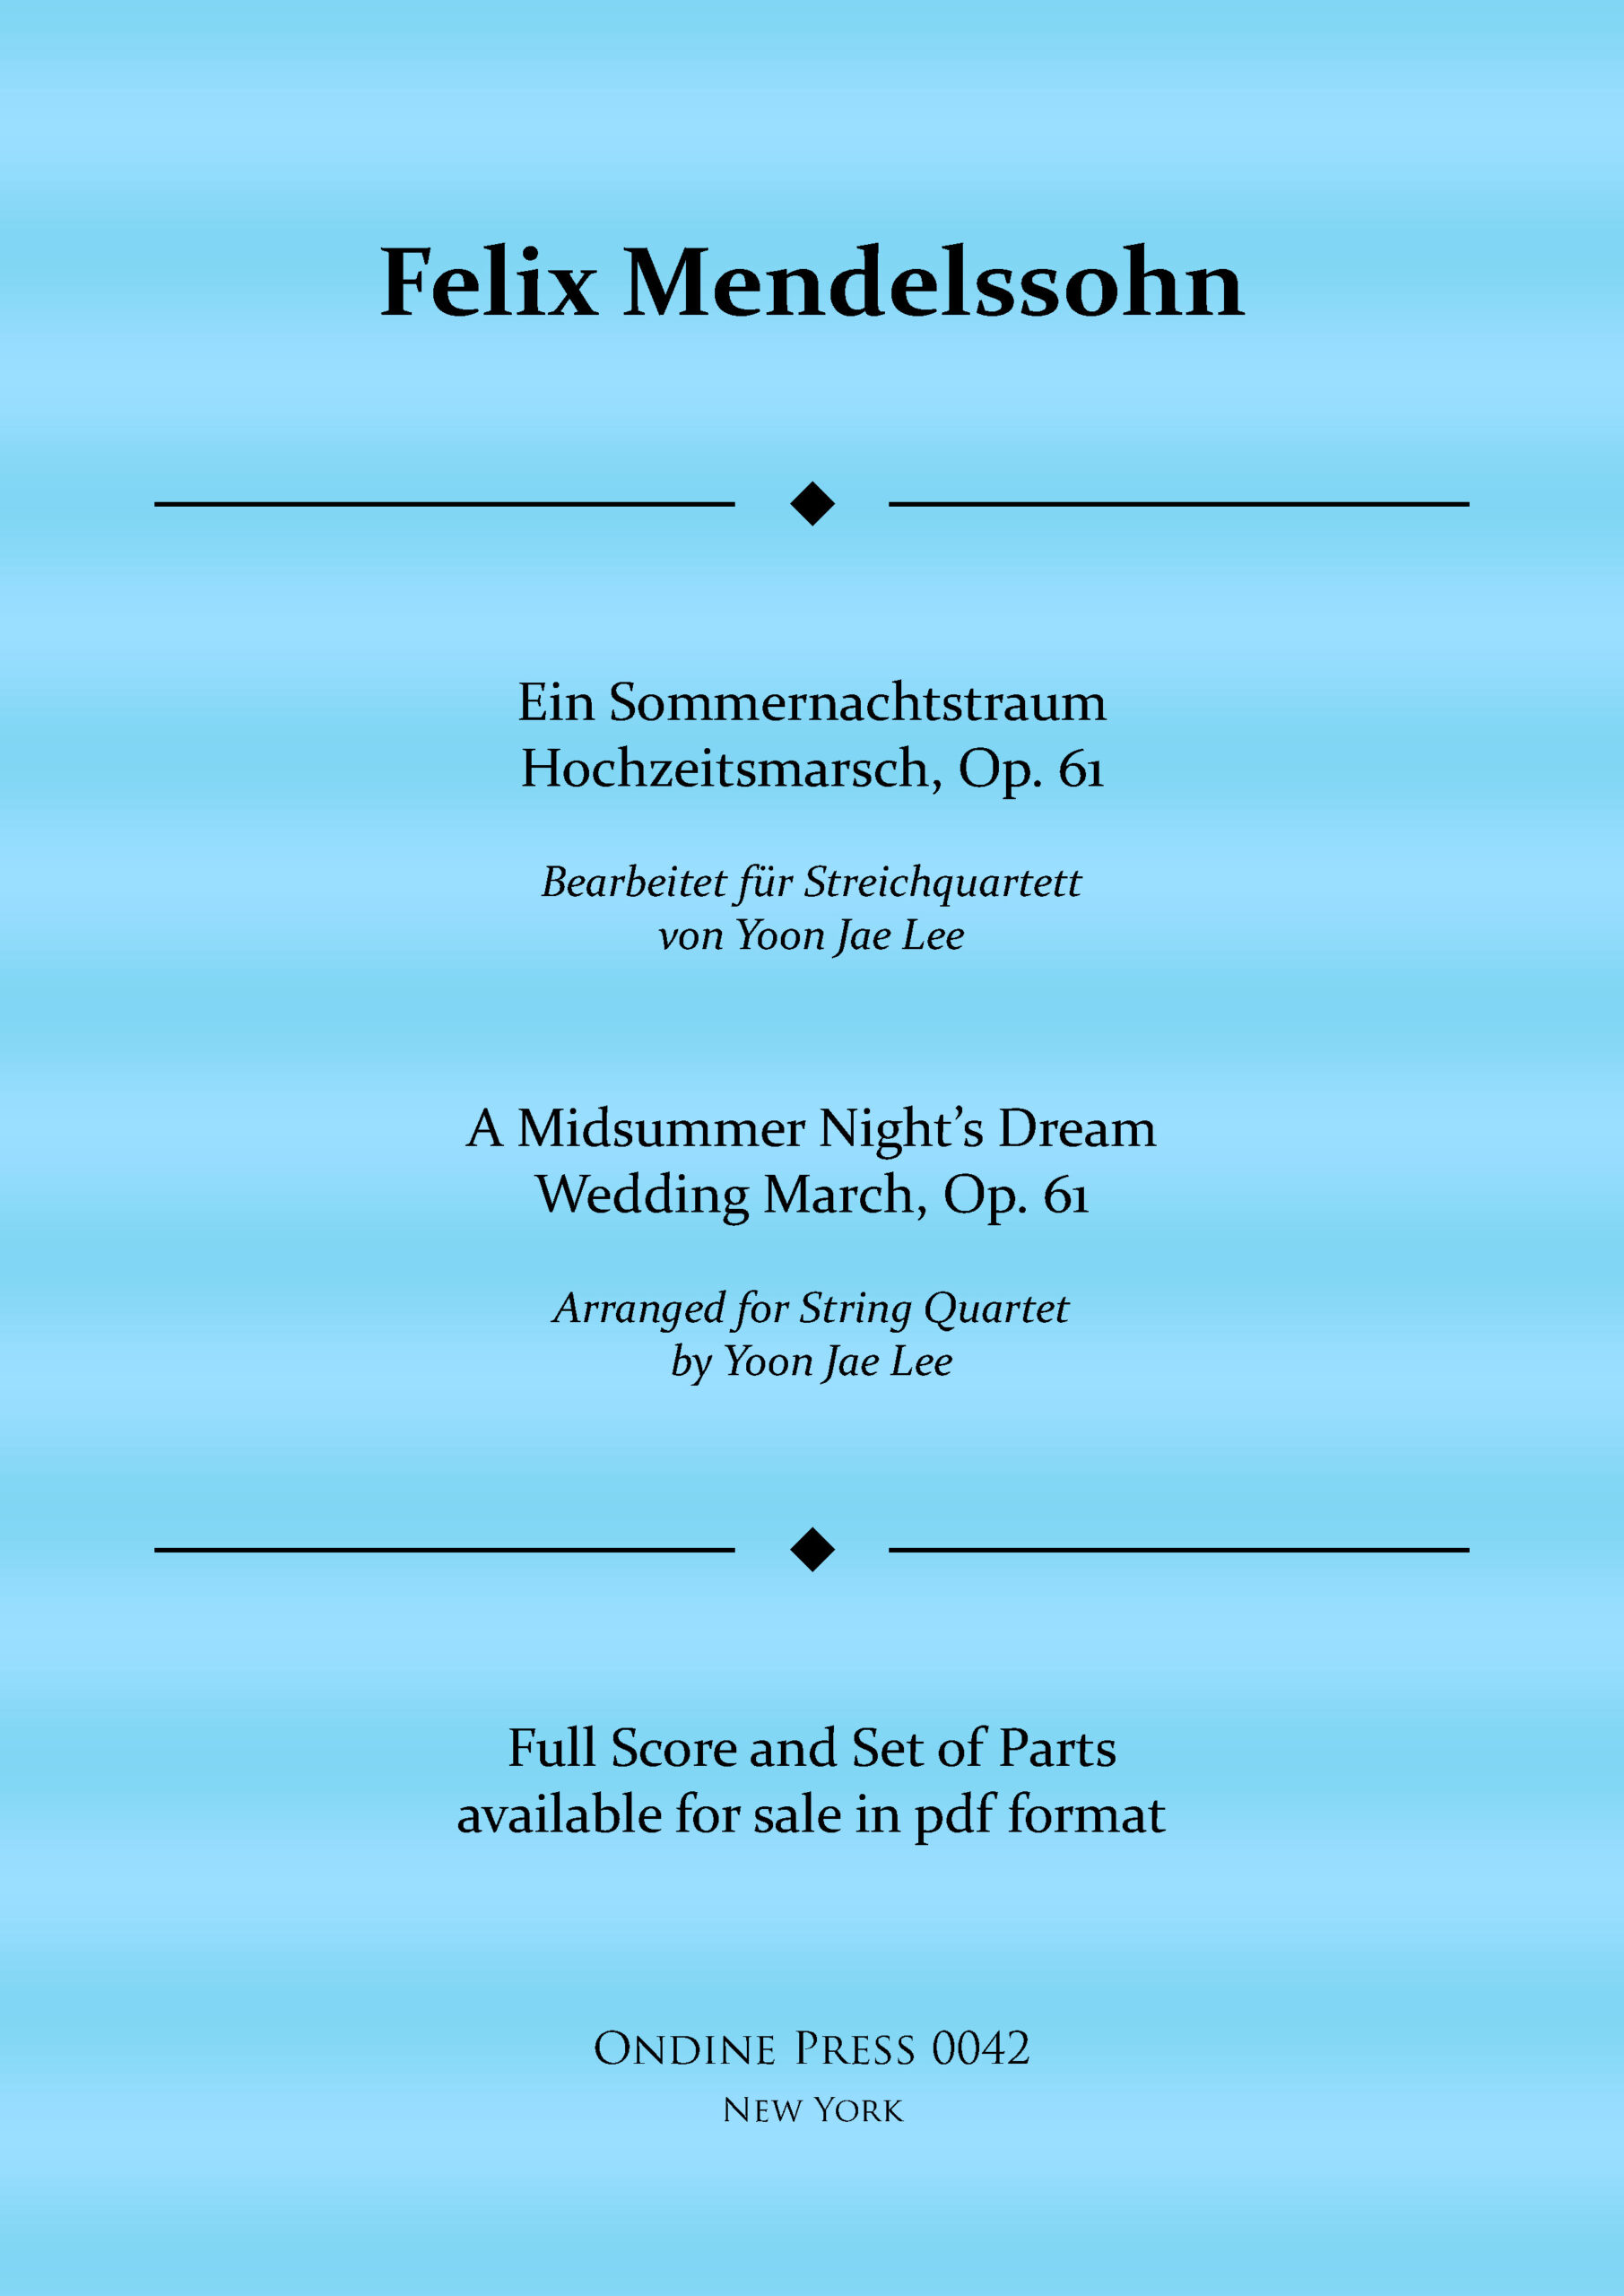 Mendelssohn Ein Sommernachtstraum Hochzeitsmarsch Op. 61 web cover scaled